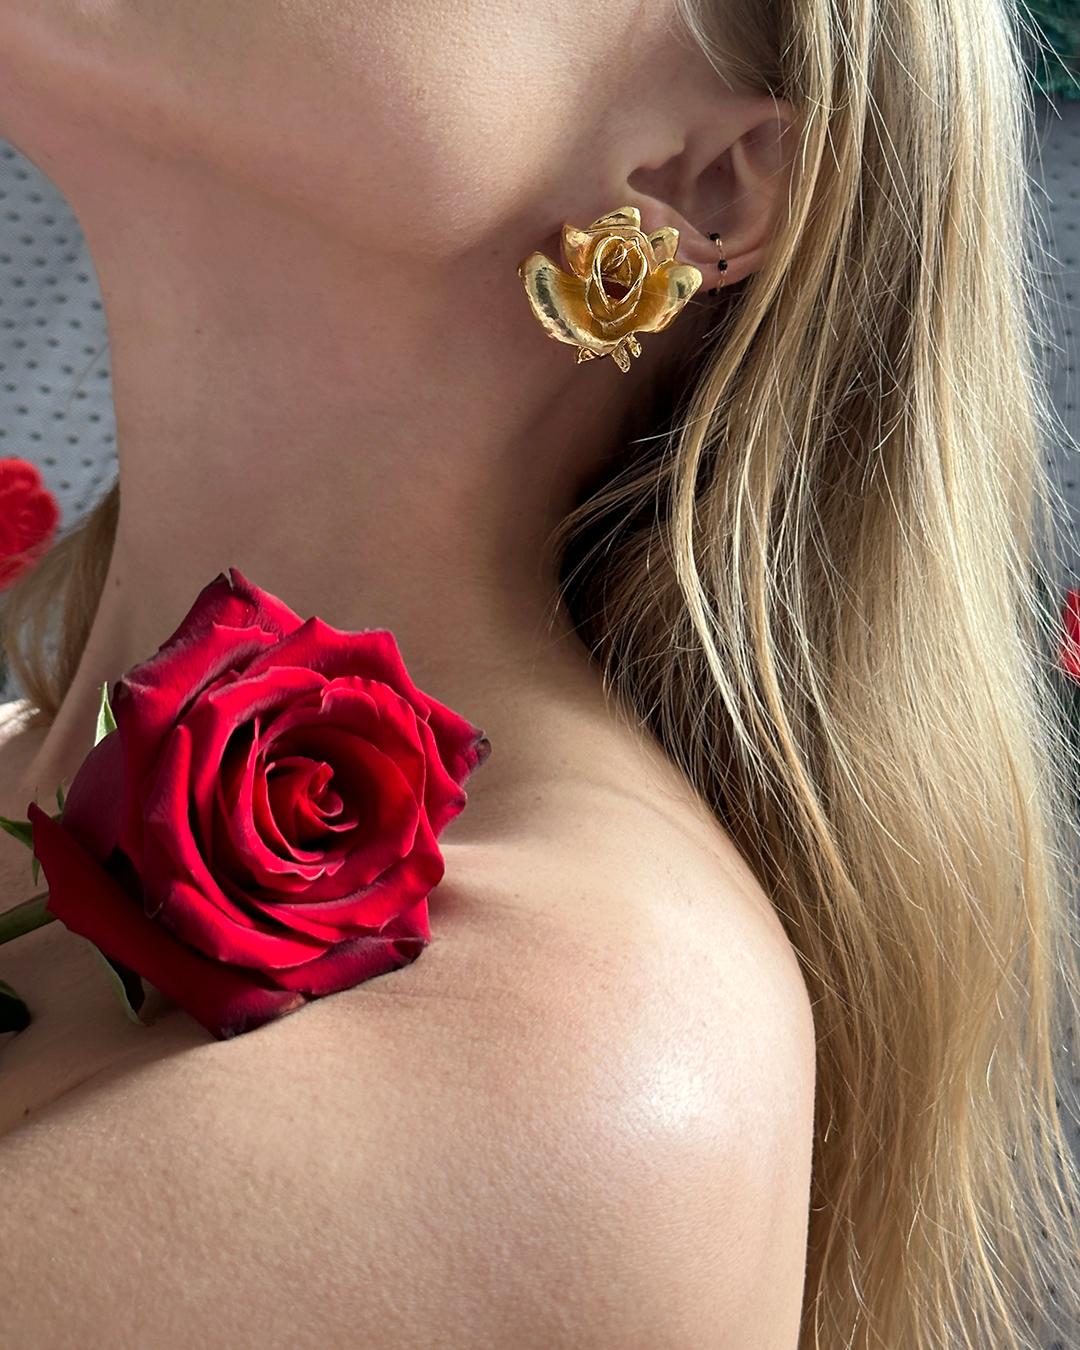 VERY BREEZY präsentiert: Diese Vintage-Rosen-Ohrringe zeigen eine figürliche Blume, die mit lebensechten, dreidimensionalen Details in einem reichen, matten Goldton gestaltet ist. Sie sitzen auf dem Ohrläppchen und sind etwa 3,5 cm lang und 3,5 cm